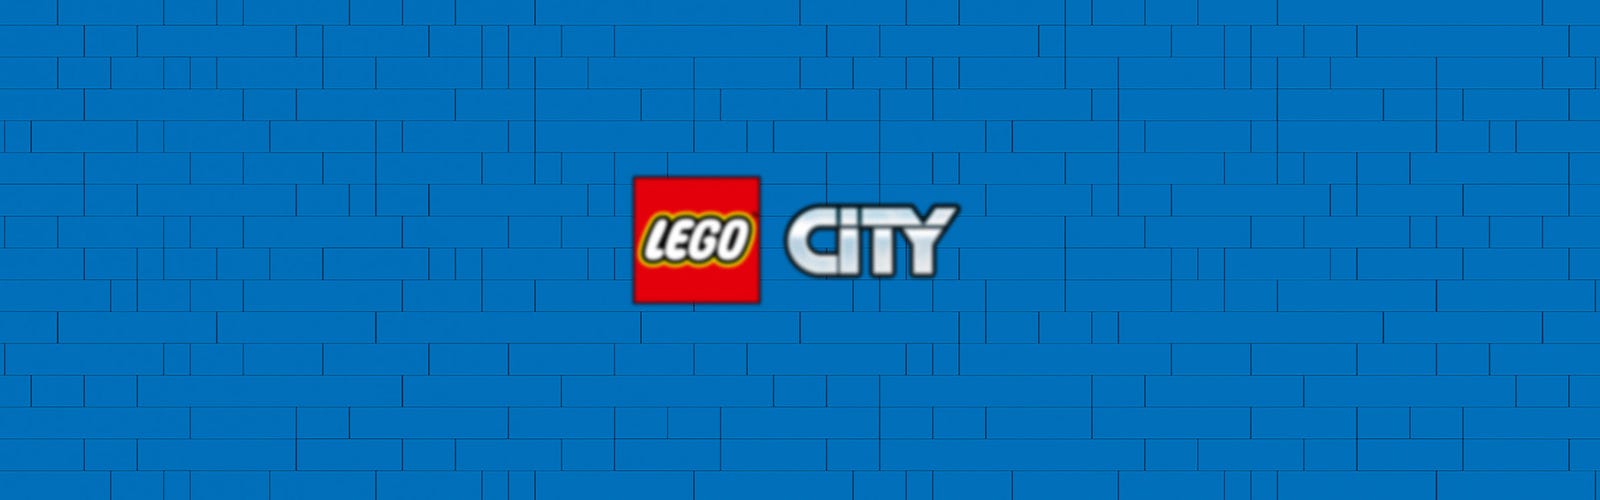 LEGO CITY - LES CAMIONS DE CHANTIER ET LA GRUE À BOULE DE DÉMOLITION #60391  - LEGO / City